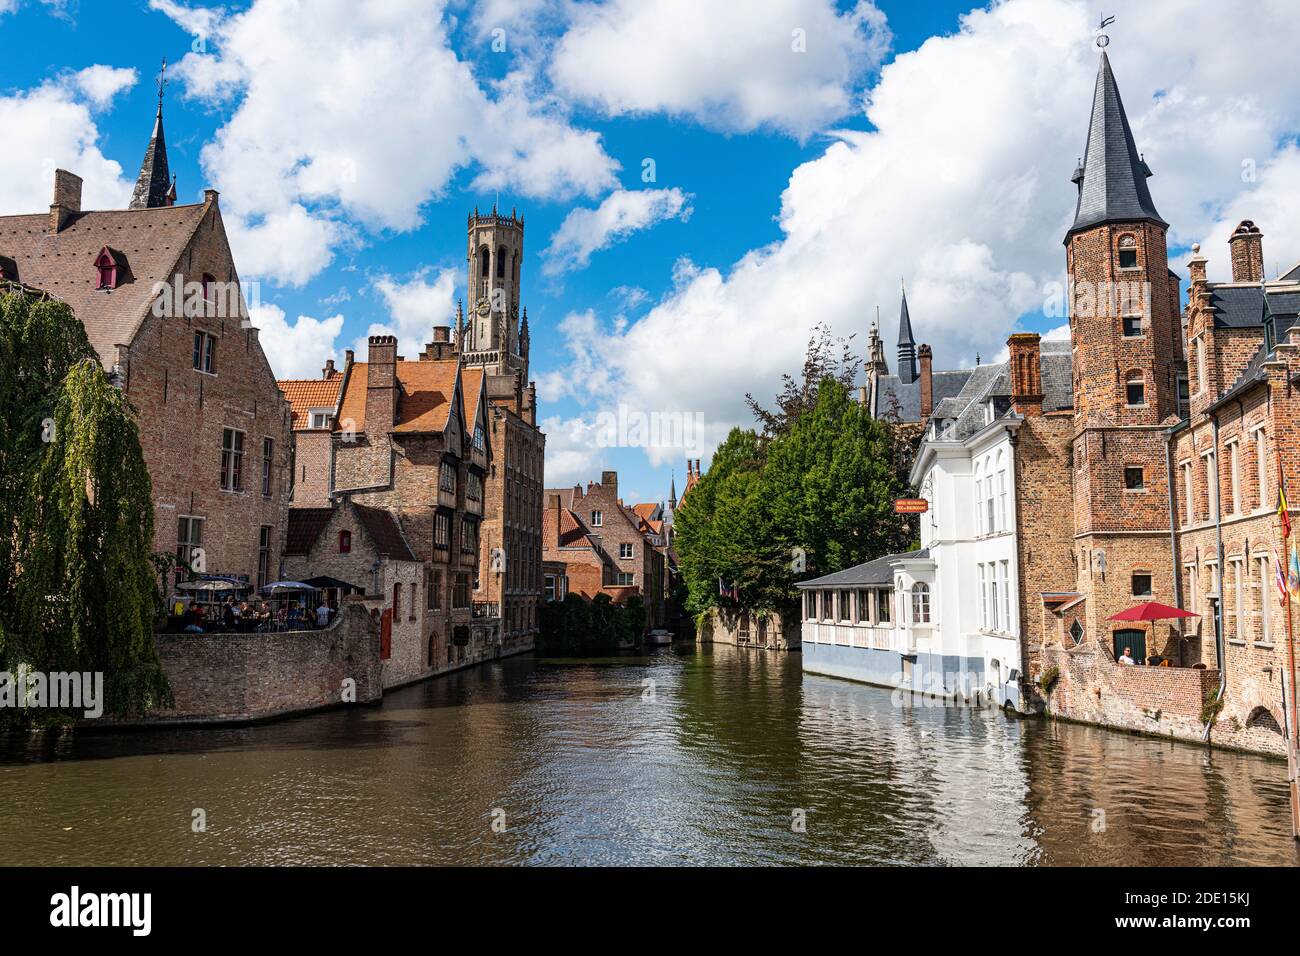 Rozenhoedkaai avec le beffroi, Bruges, site classé au patrimoine mondial de l'UNESCO, Belgique, Europe Banque D'Images